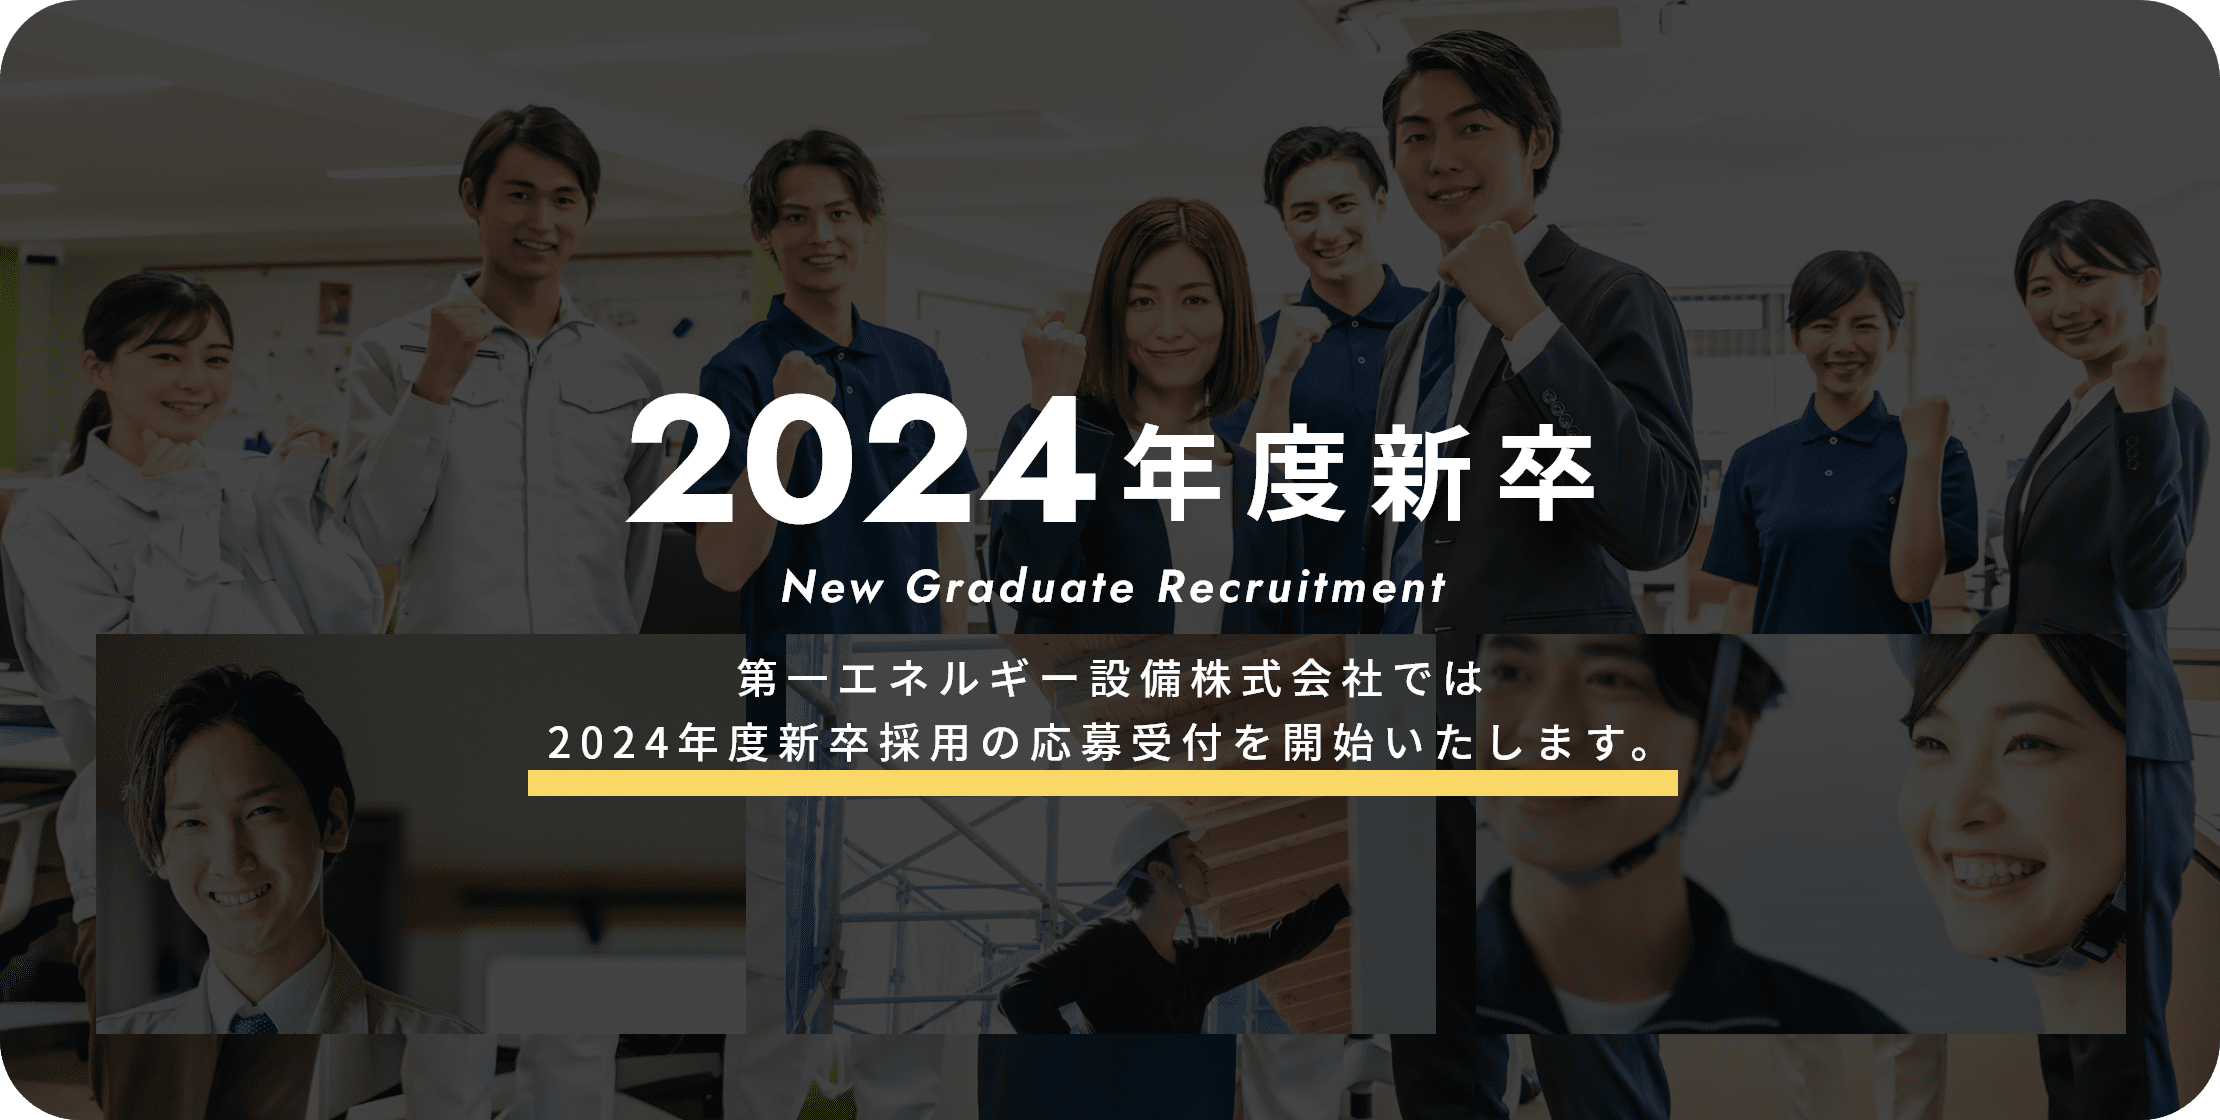 2024年度新卒 New Graduate Recruitment 第一エネルギー設備株式会社では2024年度新卒採用の応募受付を開始いたします。